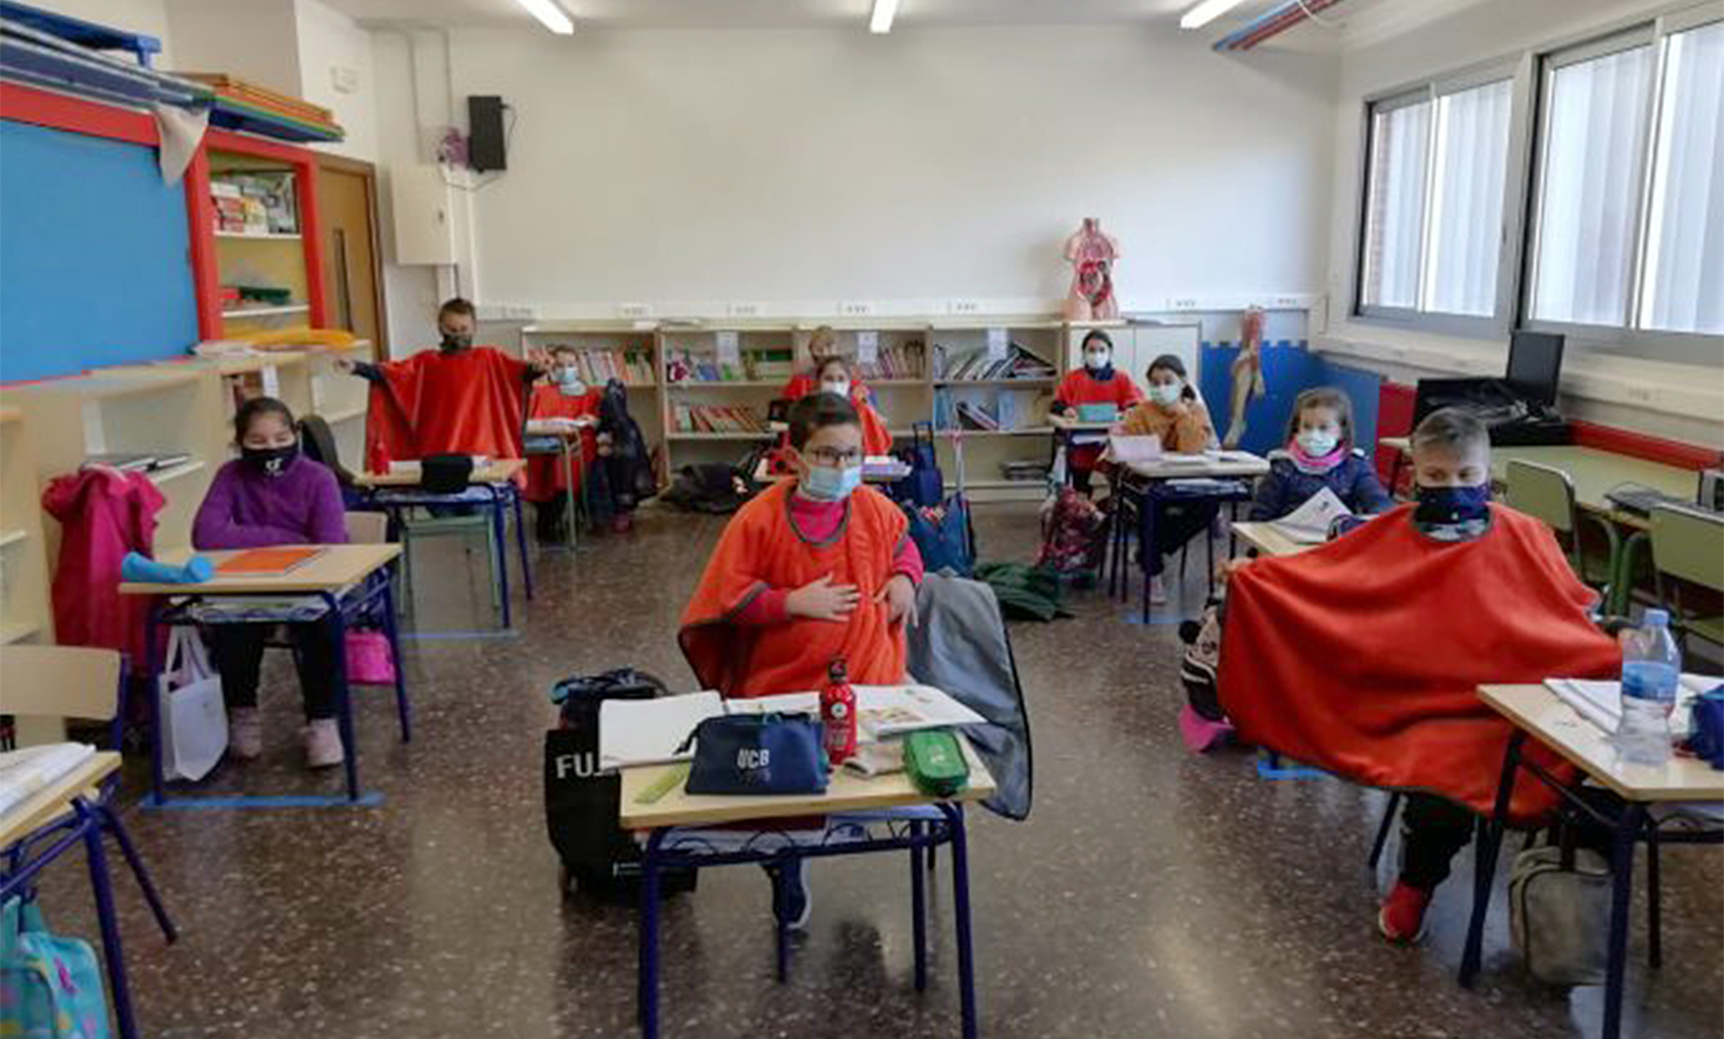 Alumnos de un centro educativo en Nules se protegen con mantas por el fro.